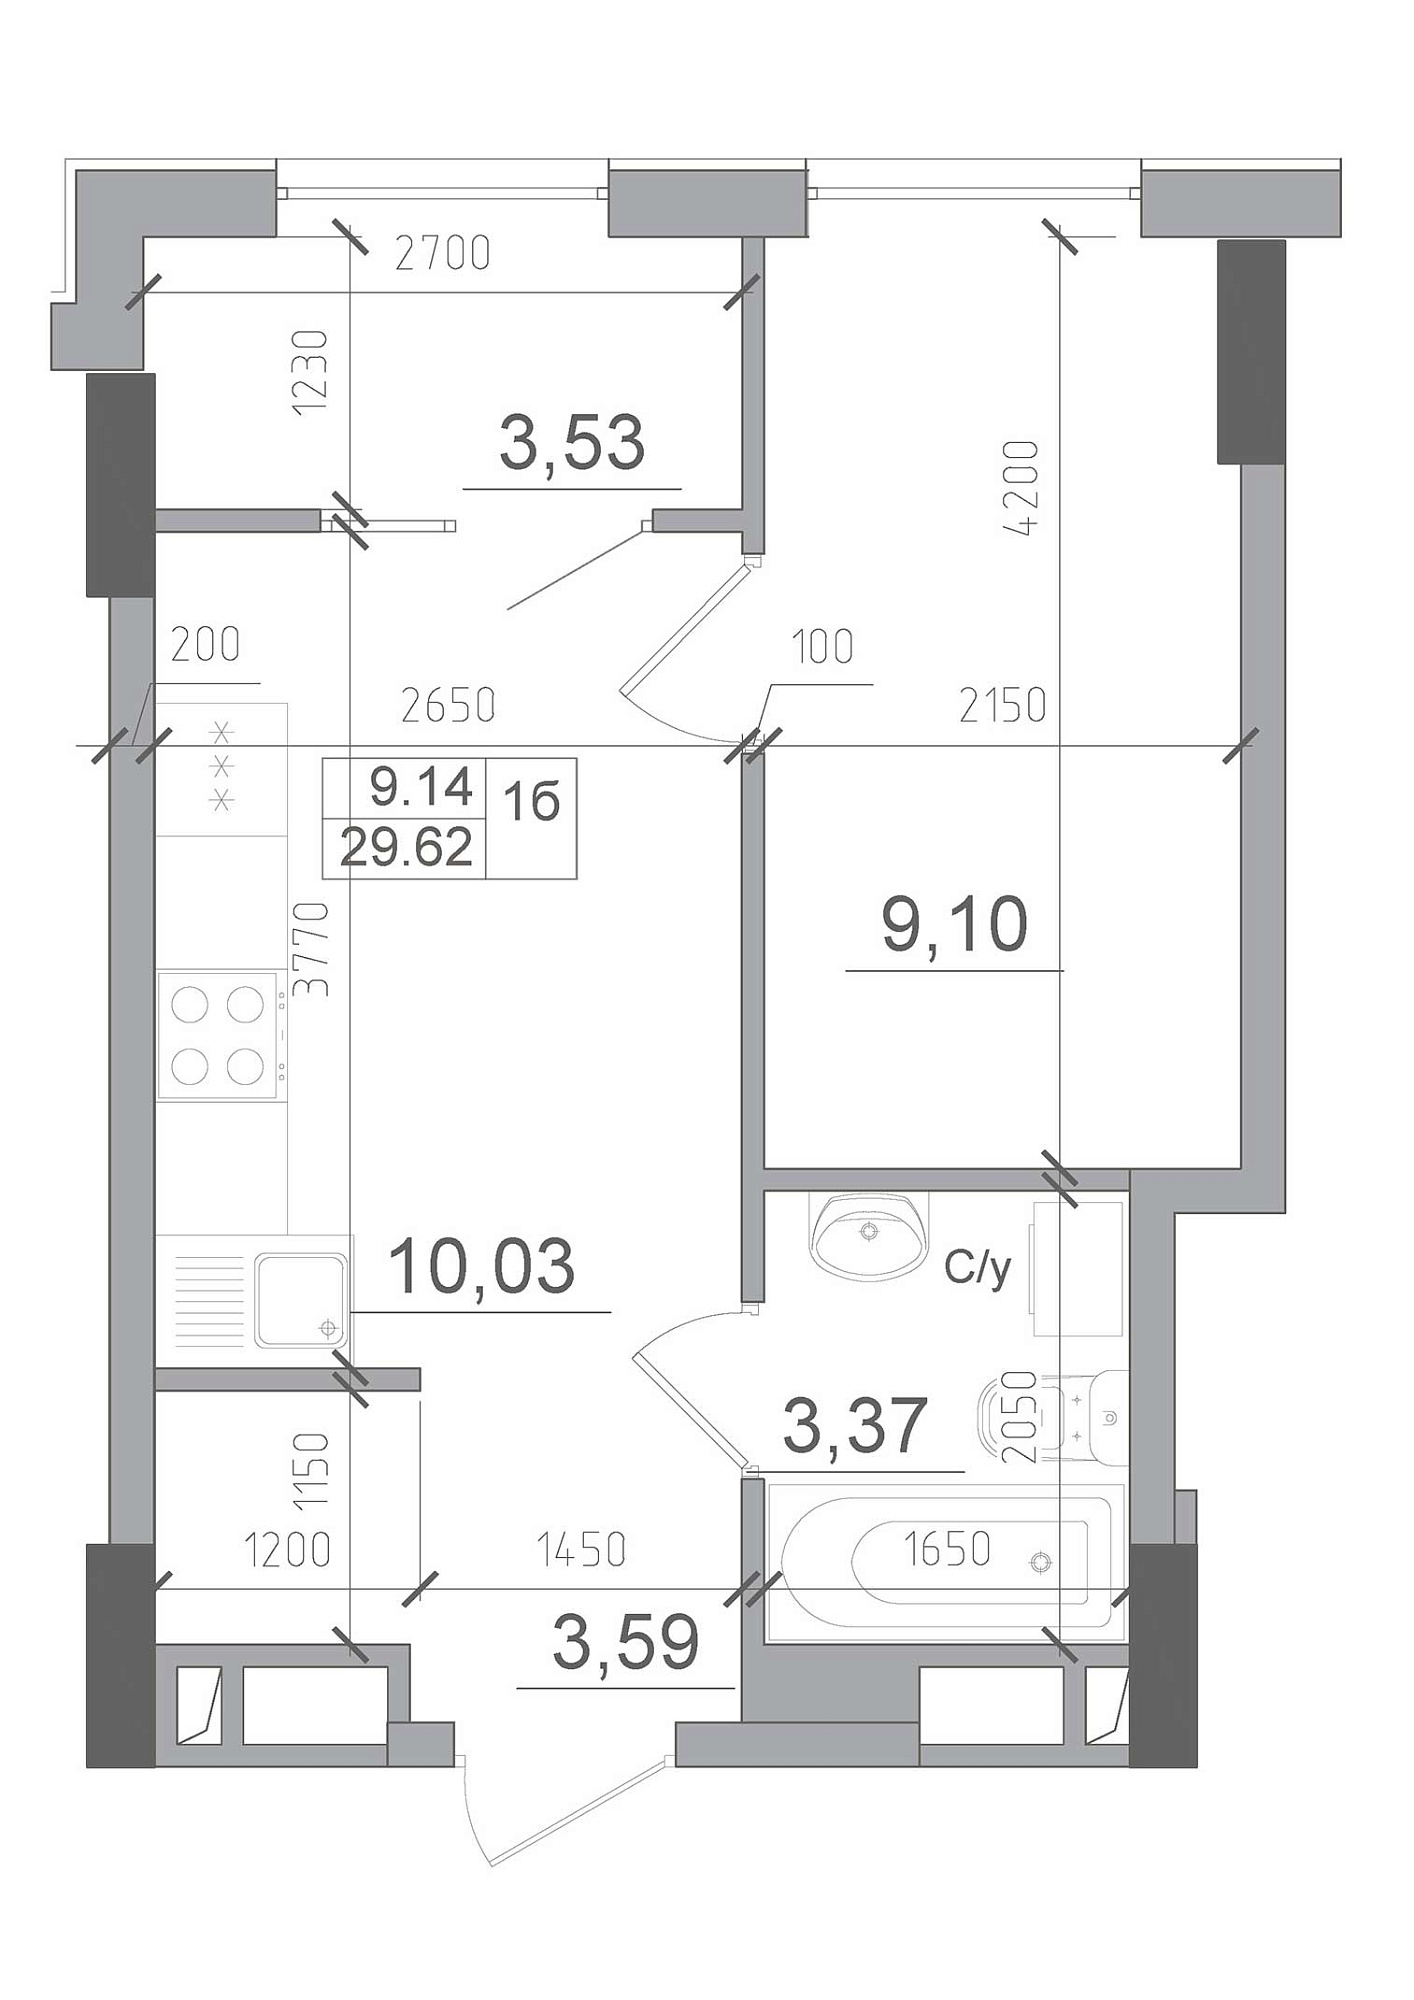 Планування 1-к квартира площею 29.62м2, AB-22-01/00002.